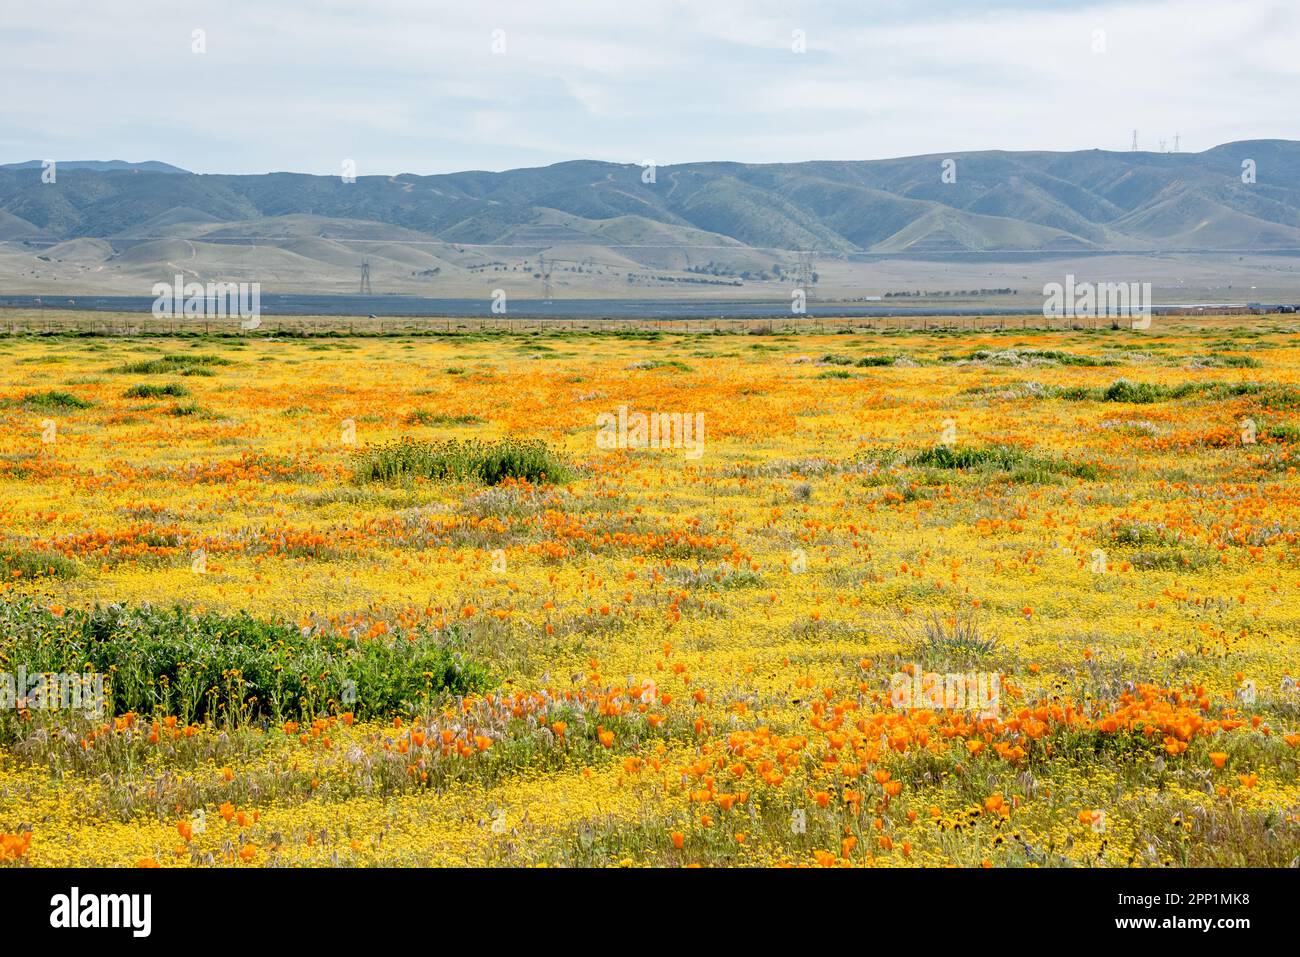 Ein Feld voller farbenfroher Wildblumen im Antelope Valley California Poppy Reserve während einer Frühlingsblüte. Gelbe und orangefarbene Blumen füllen die Landschaft. Stockfoto